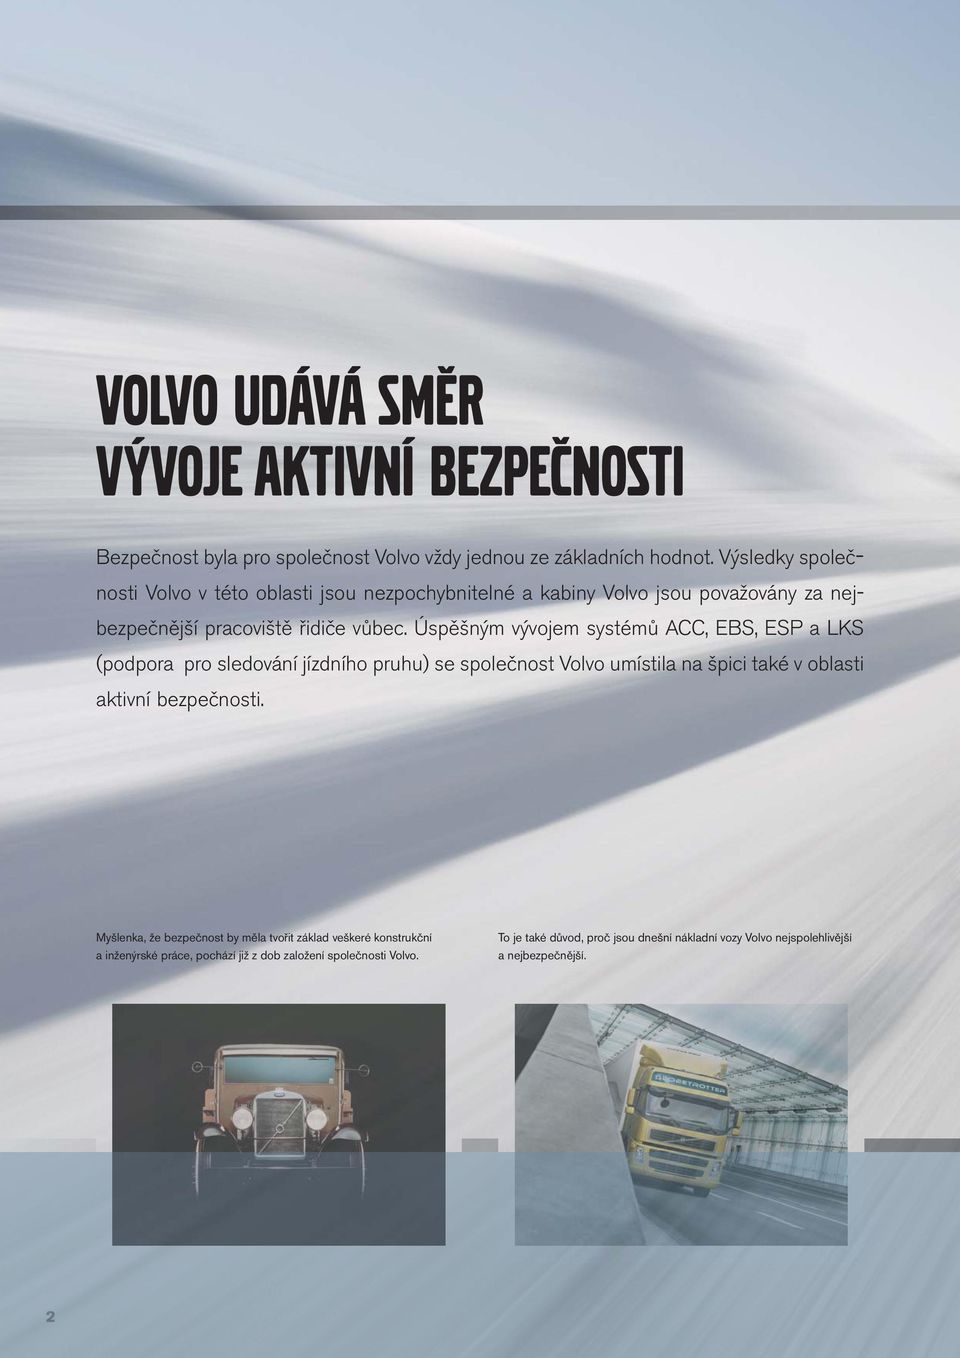 Úspěšným vývojem systémů ACC, EBS, ESP a LKS (podpora pro sledování jízdního pruhu) se společnost Volvo umístila na špici také v oblasti aktivní bezpečnosti.